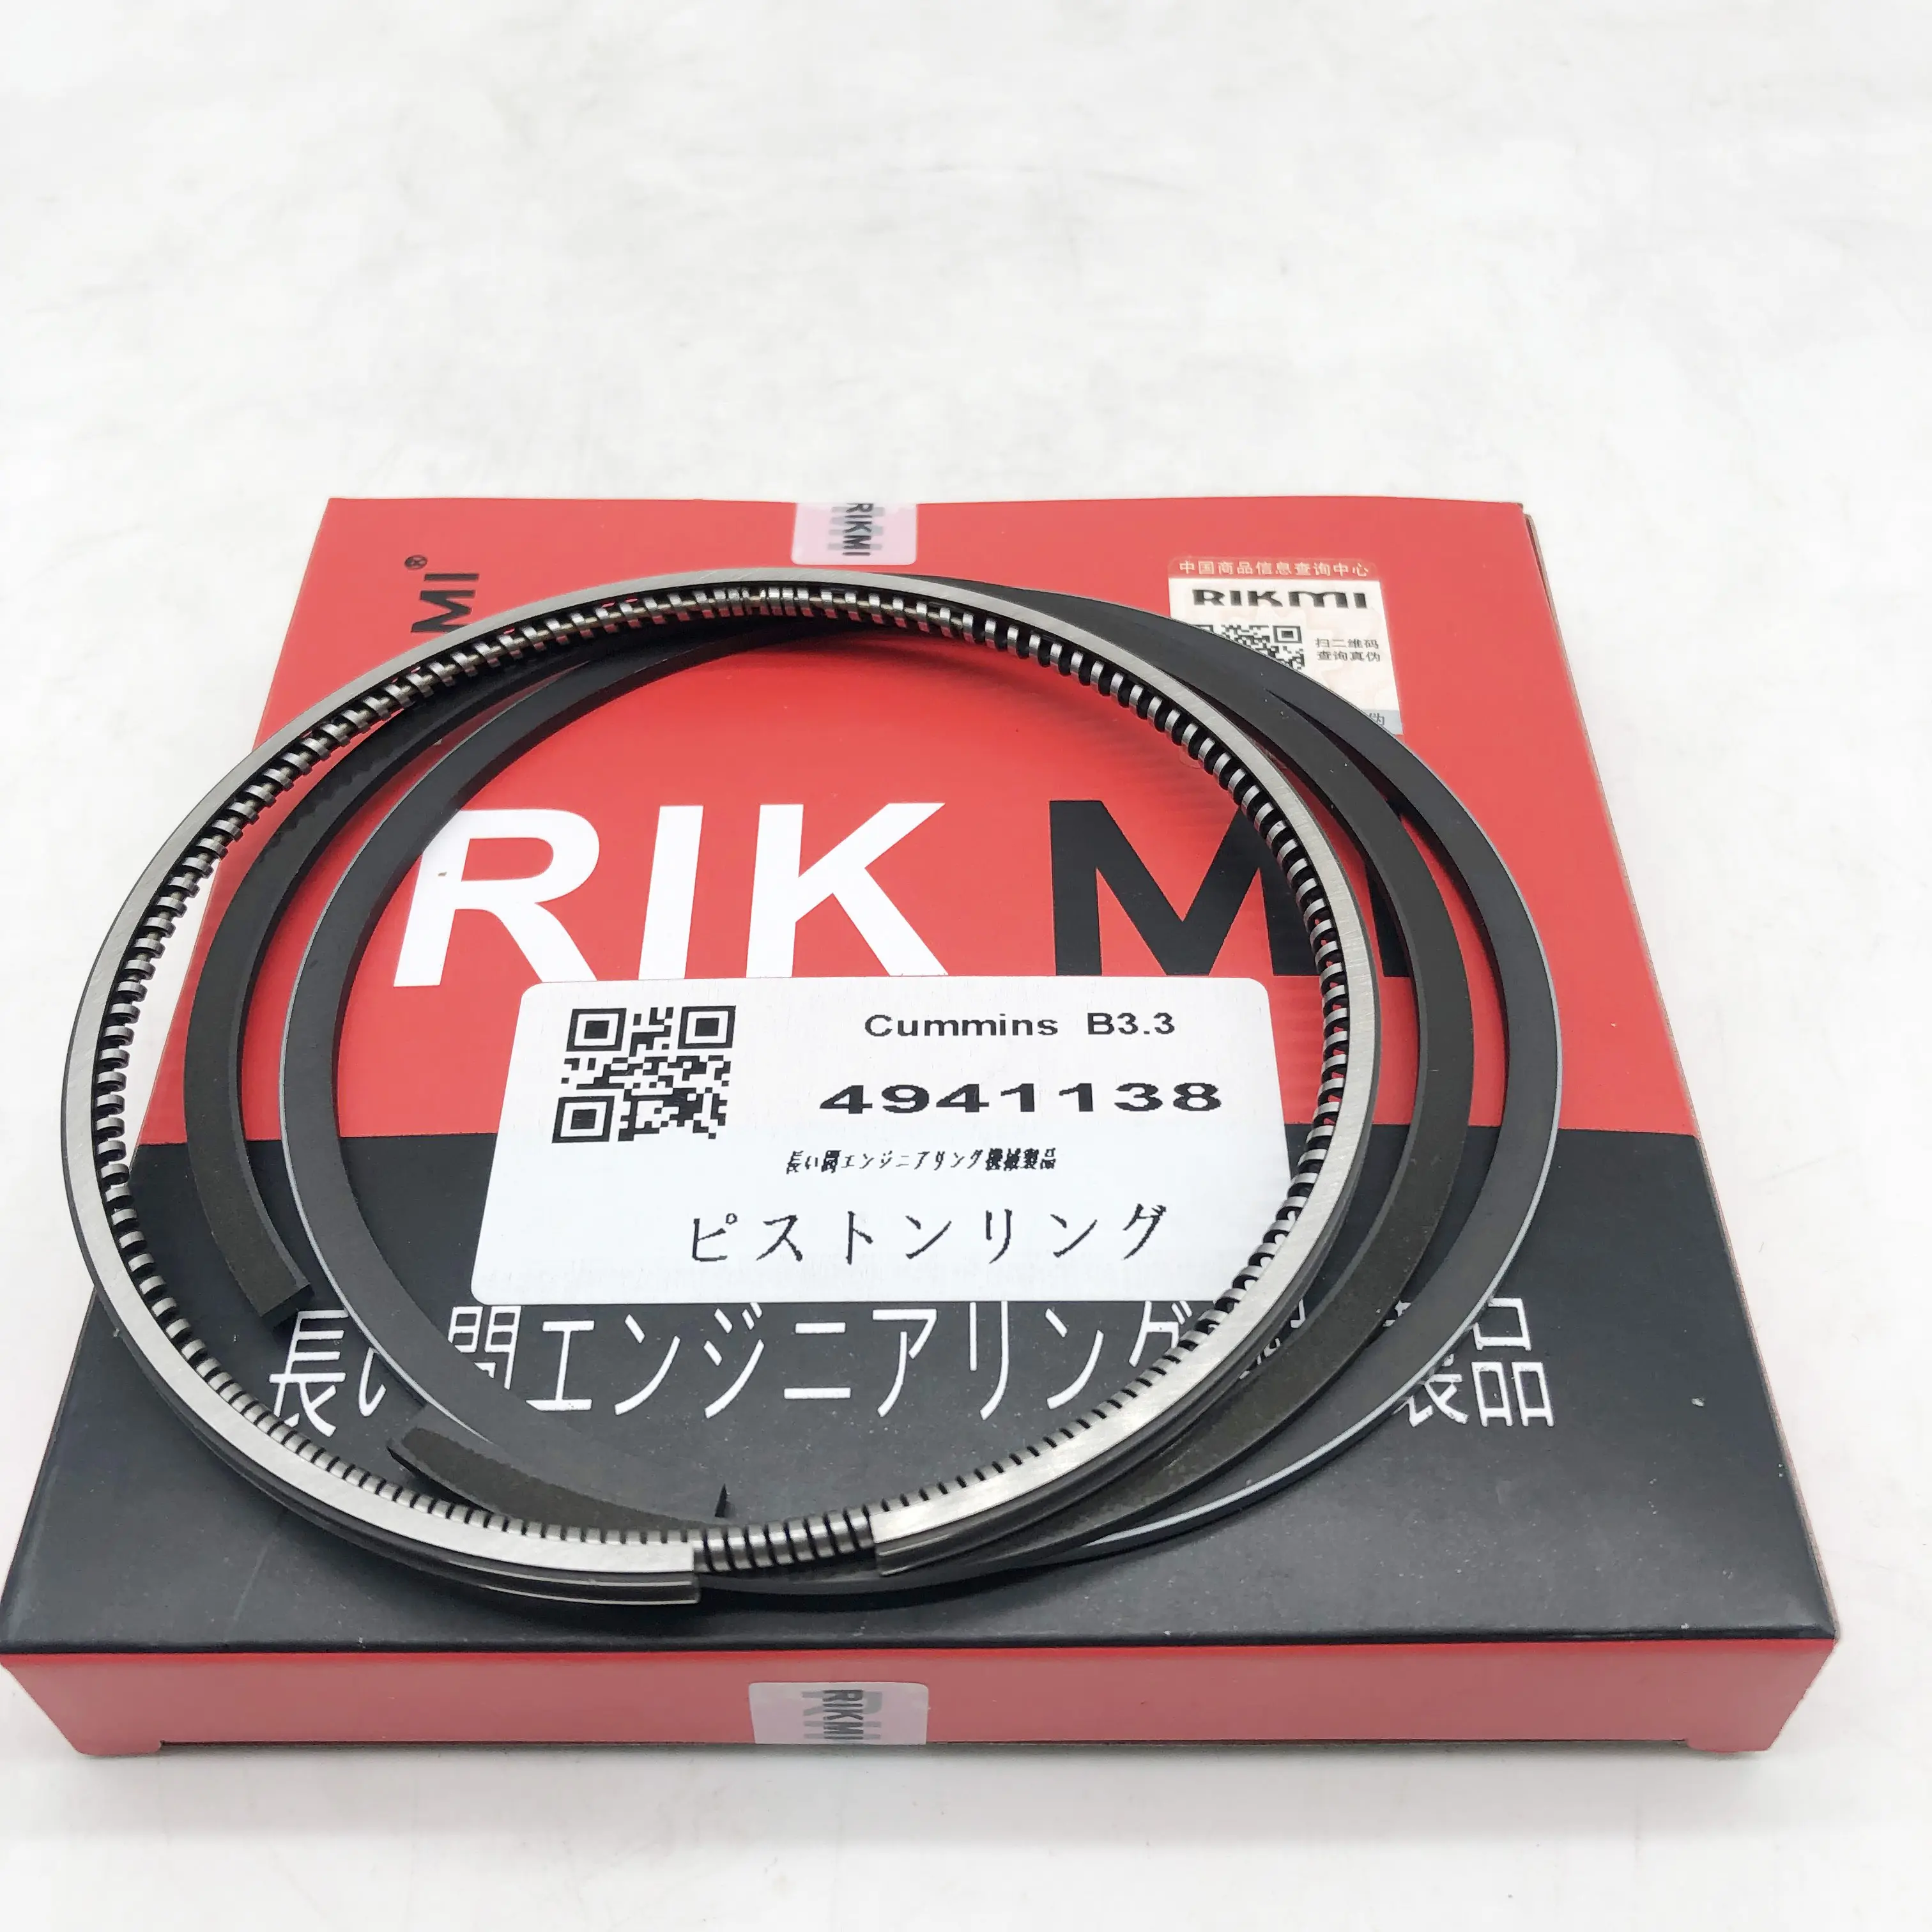 Rikmi उच्च गुणवत्ता पिस्टन की अंगूठी के लिए Cummins B3.3 डीजल इंजन 4941138 6208-31-2400